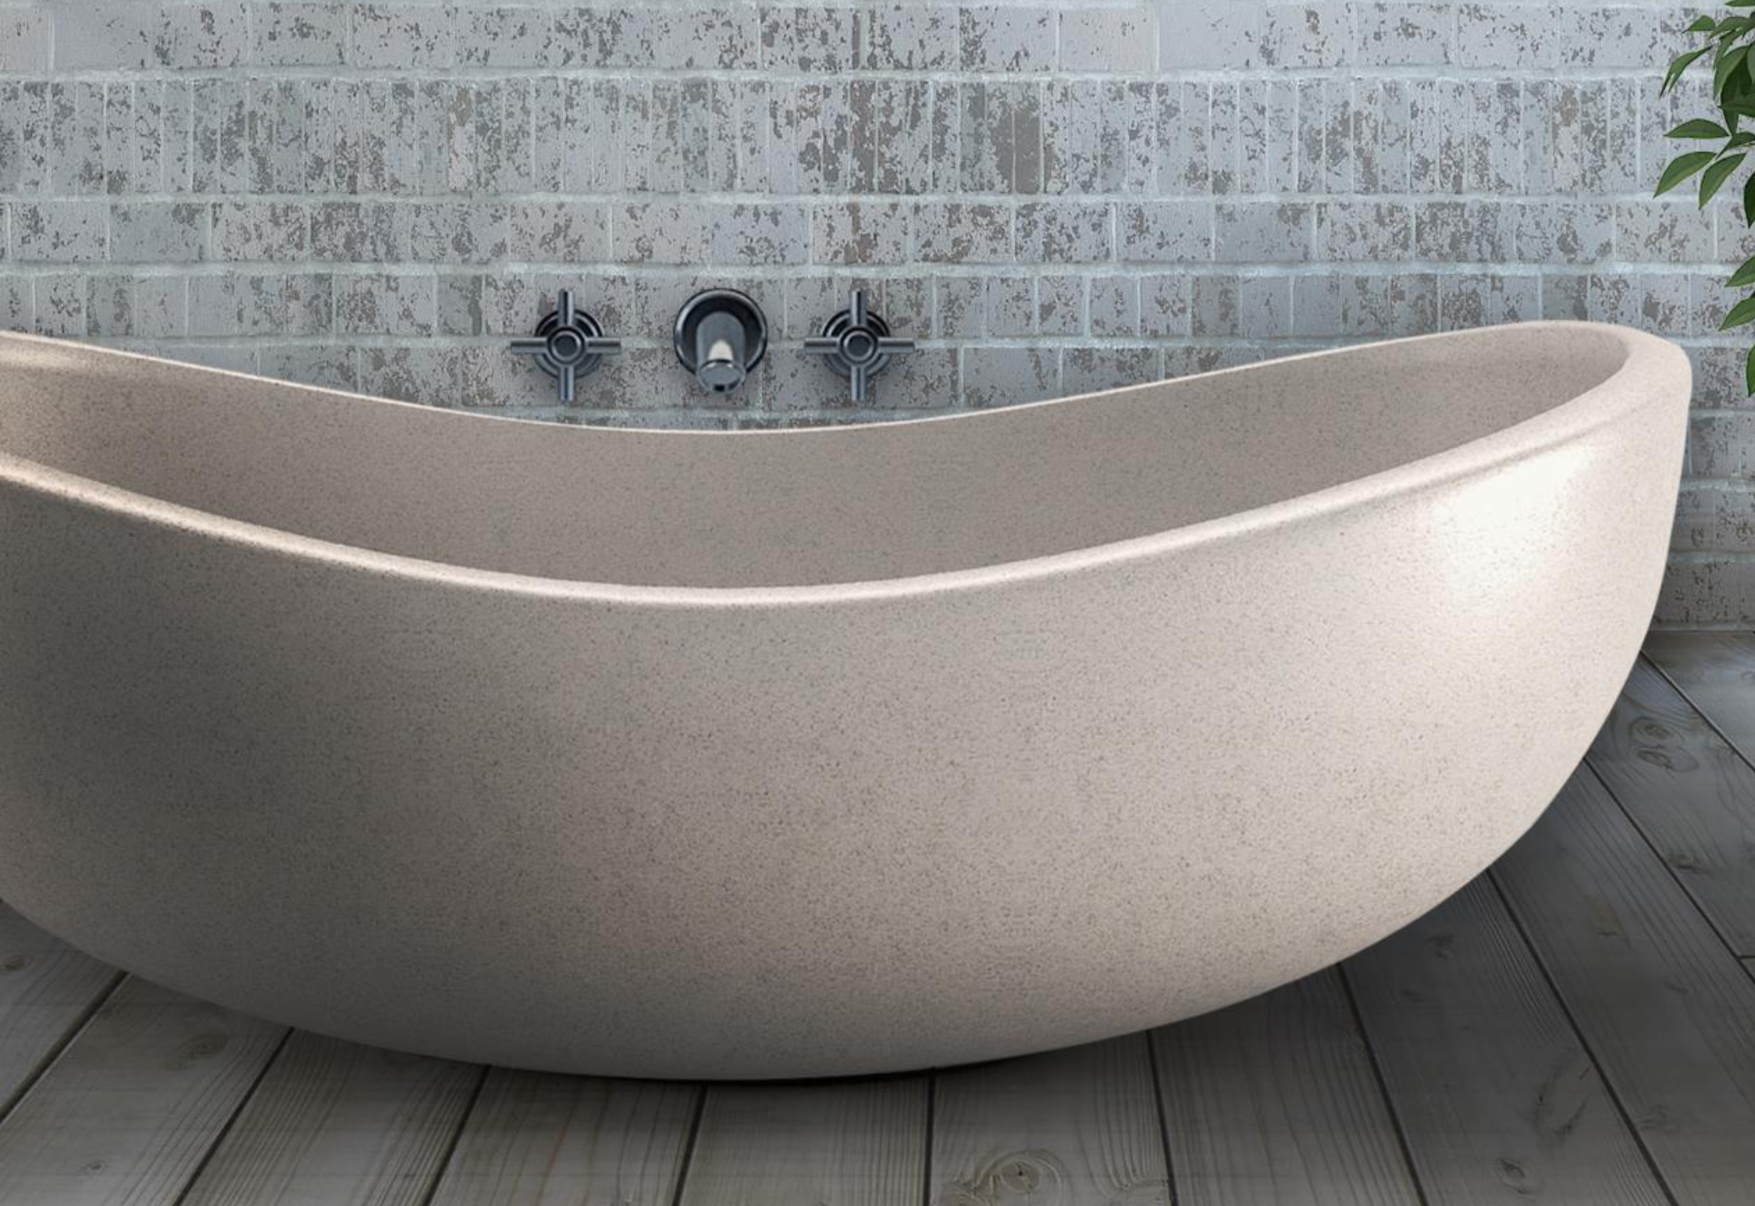 Penawaran Jual Bathtub Dengan Harga Terbaik | Bathtub Indonesia